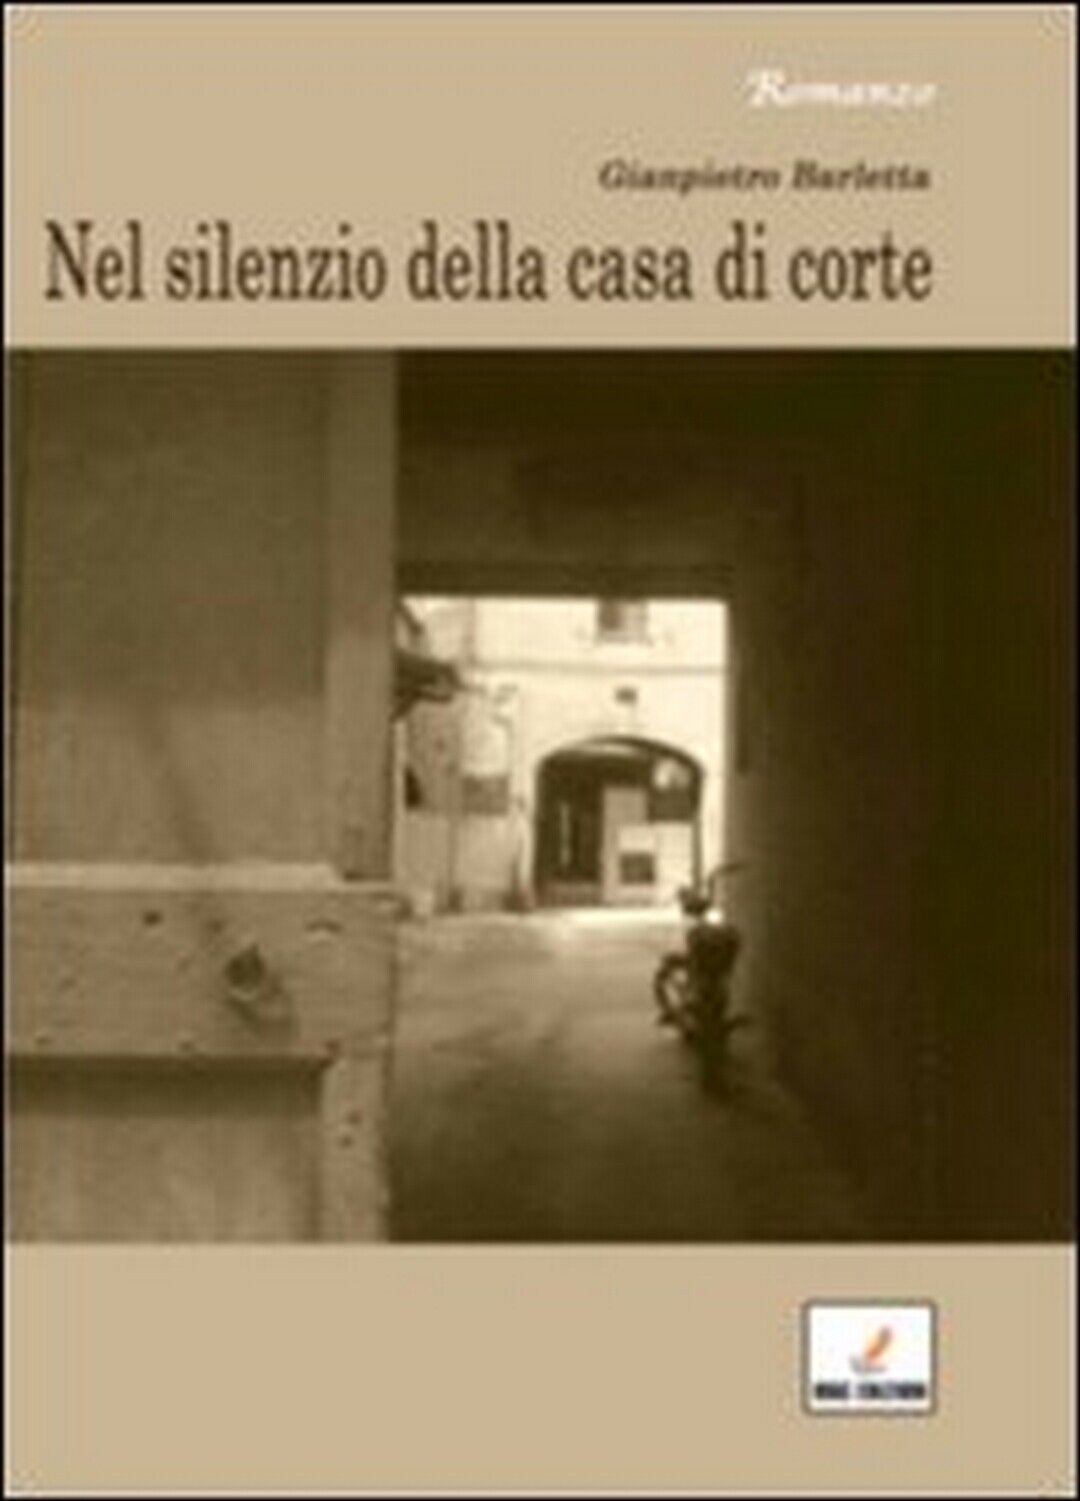 Nel silenzio della casa di corte  di Gianpietro Barletta,  2012,  Mgc Edizioni